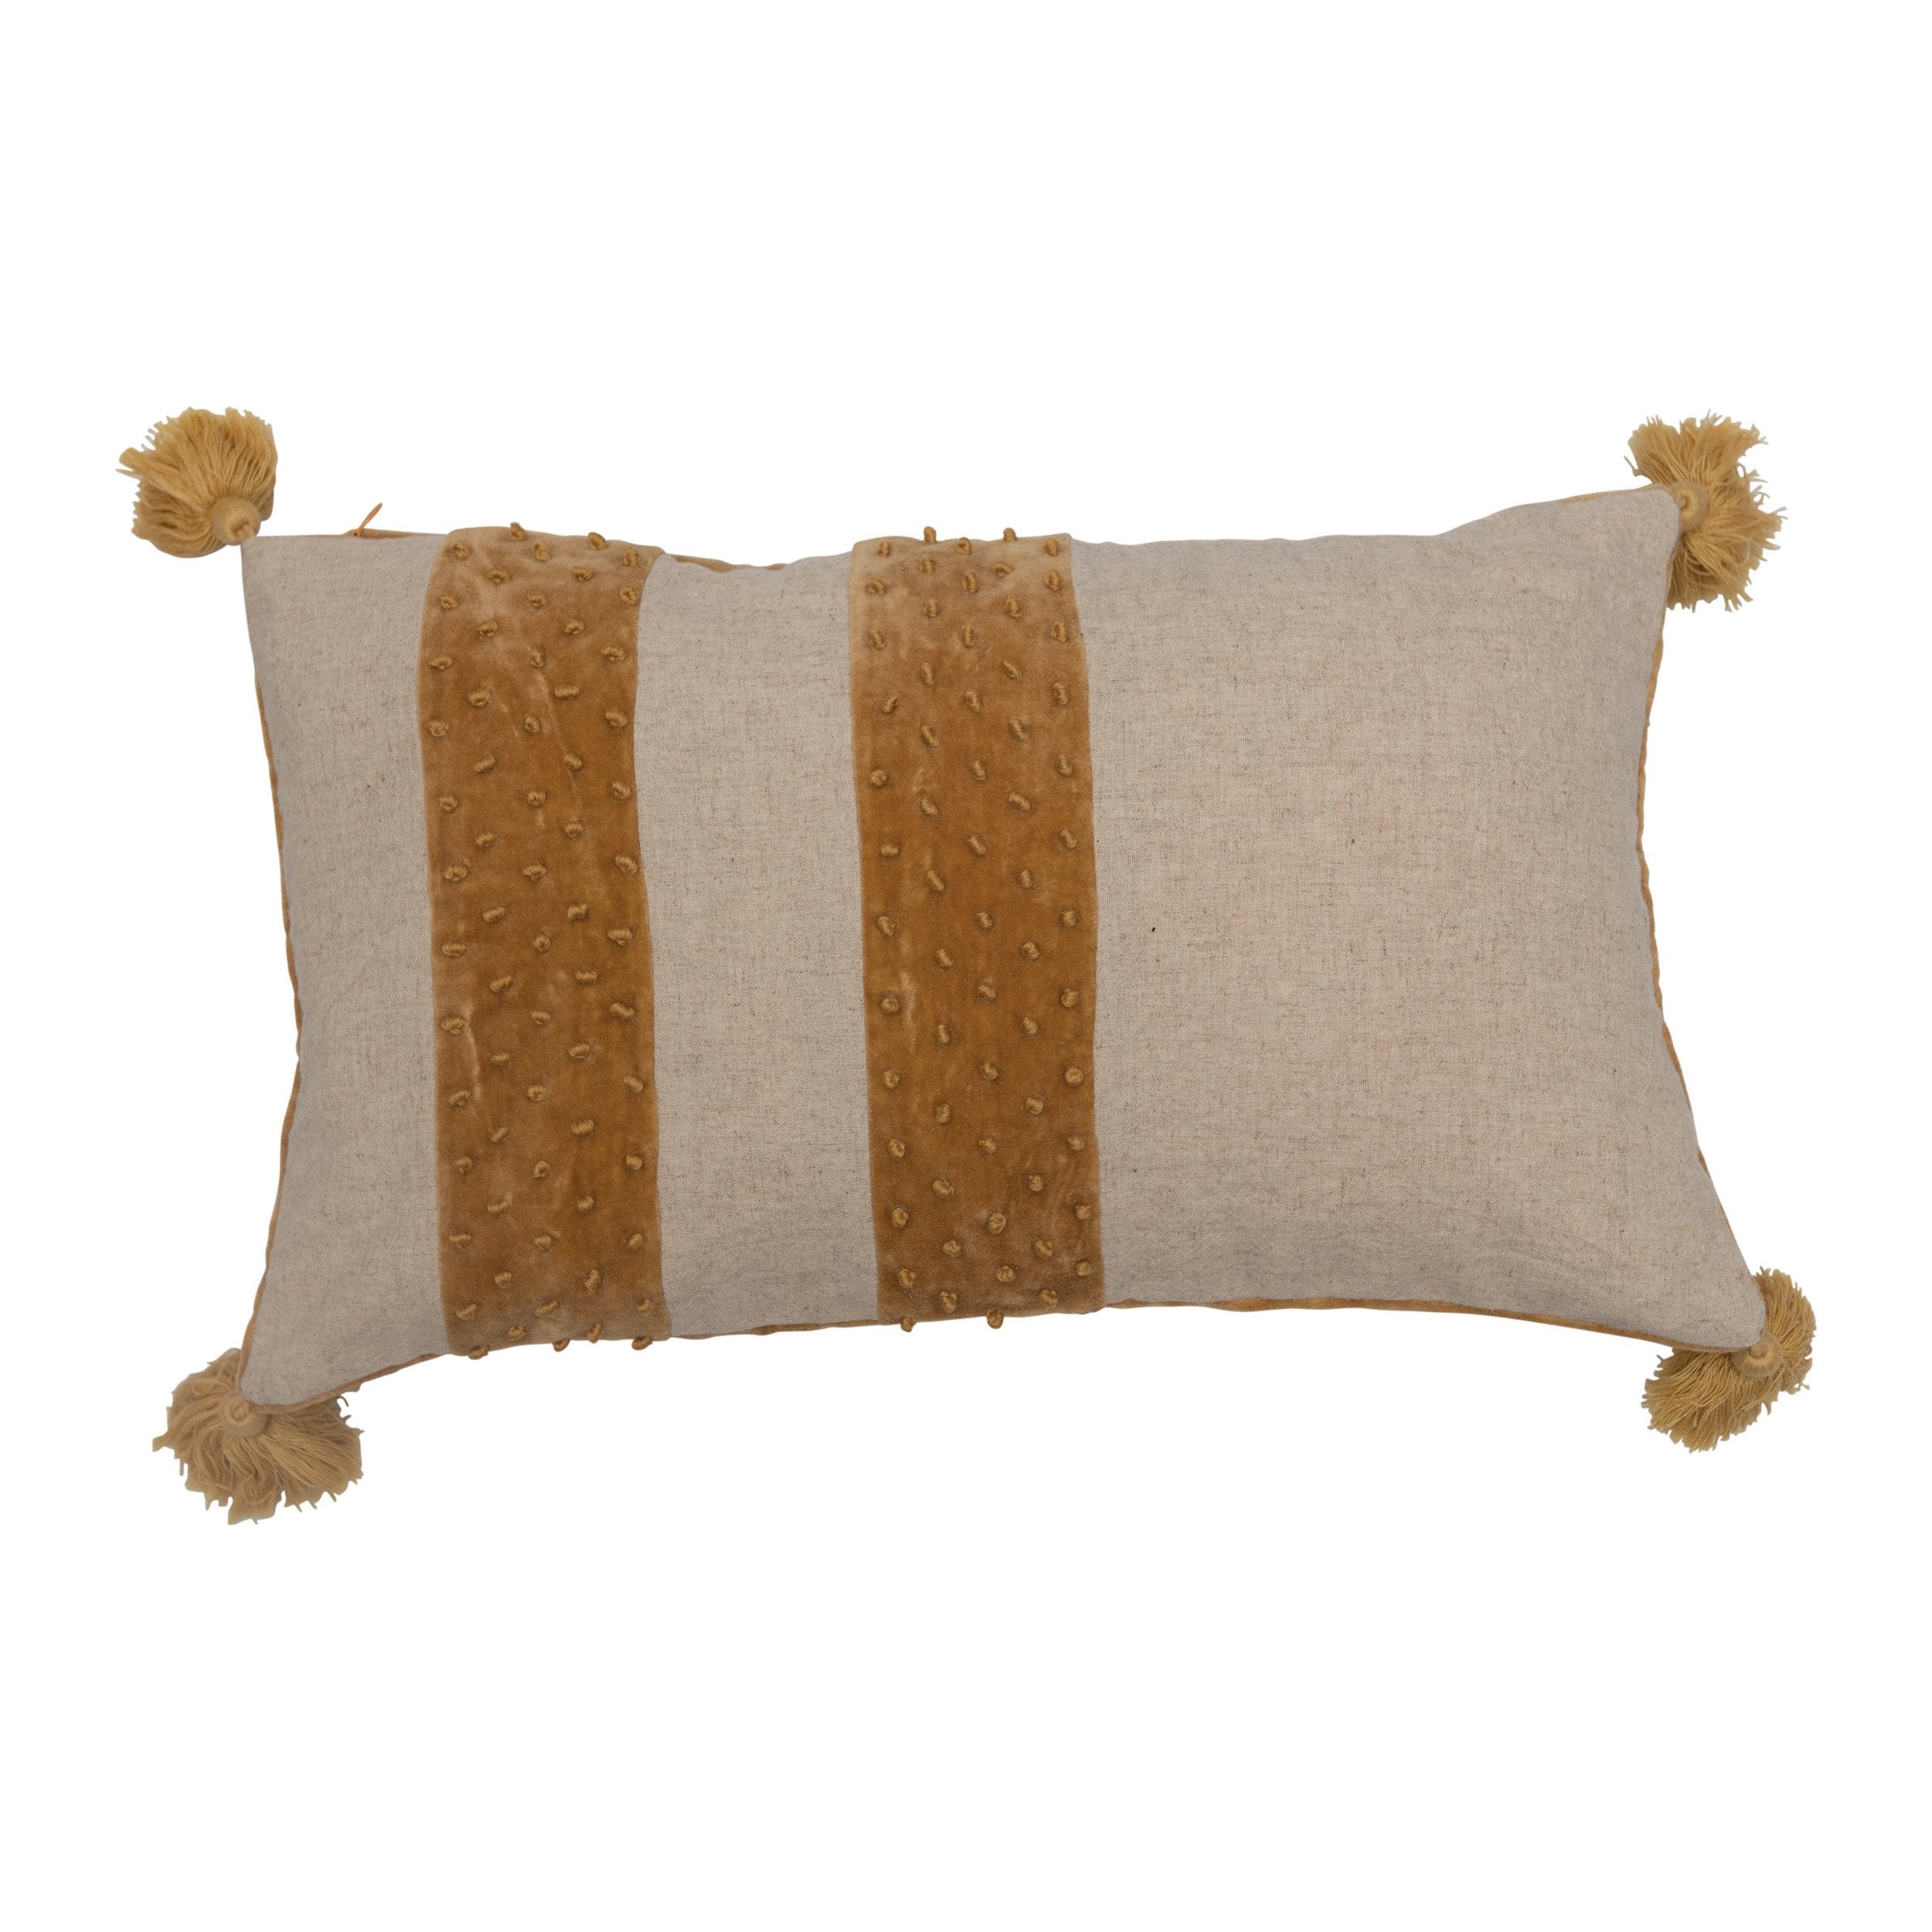 Mustard Lumbar Pillow w/ Velvet Stripes and Tassels